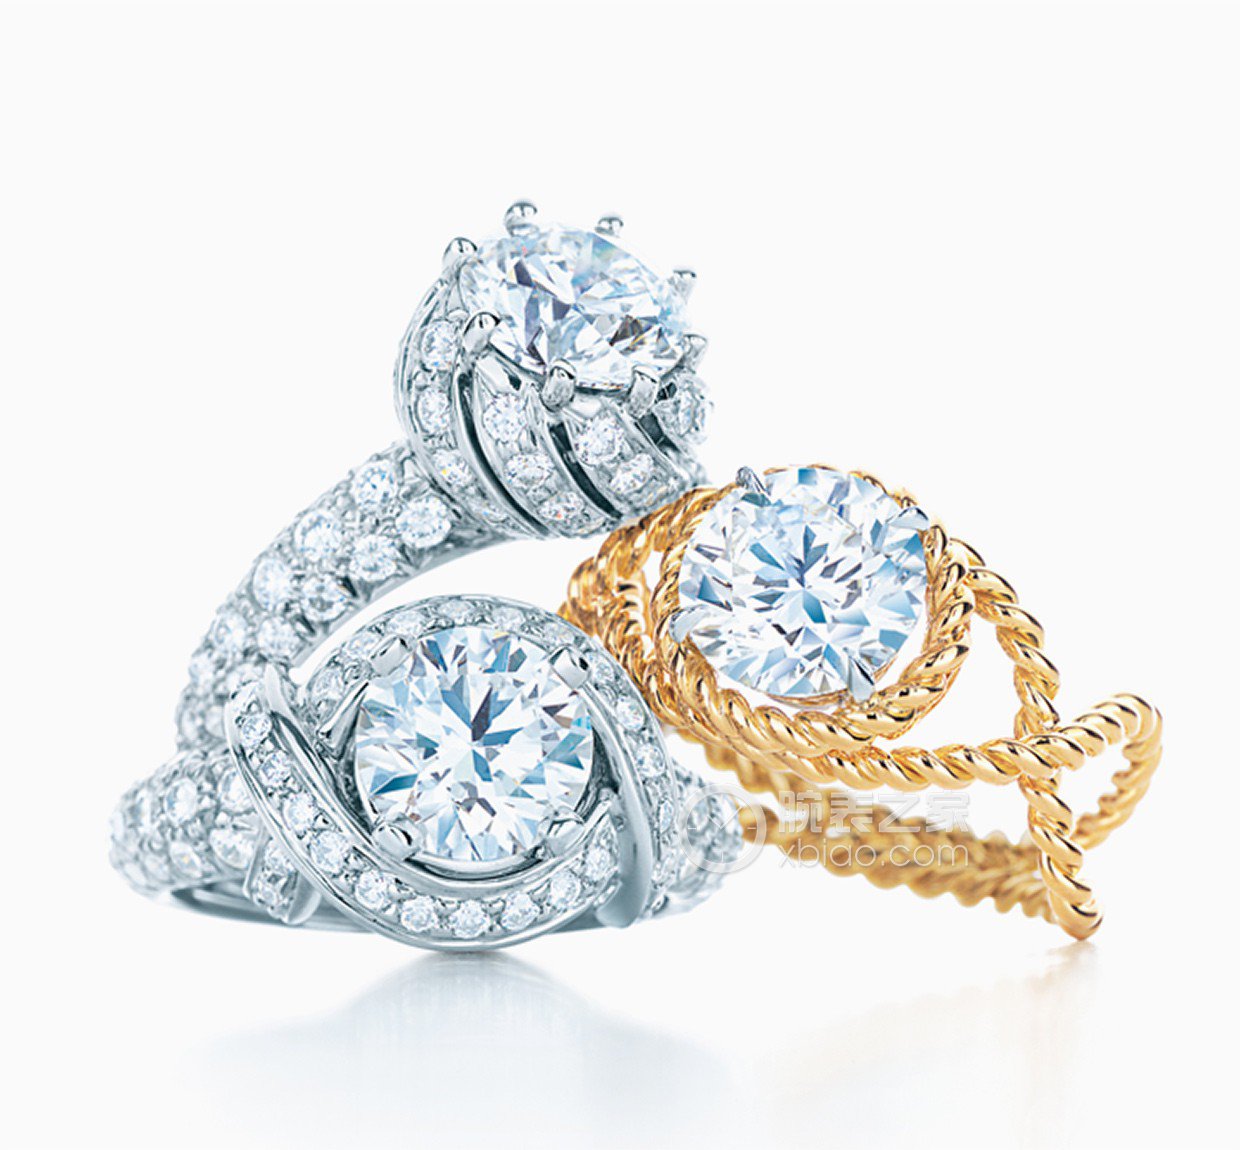 高清图|蒂芙尼铂金镶嵌椭圆形钻石戒指图片1|腕表之家-珠宝